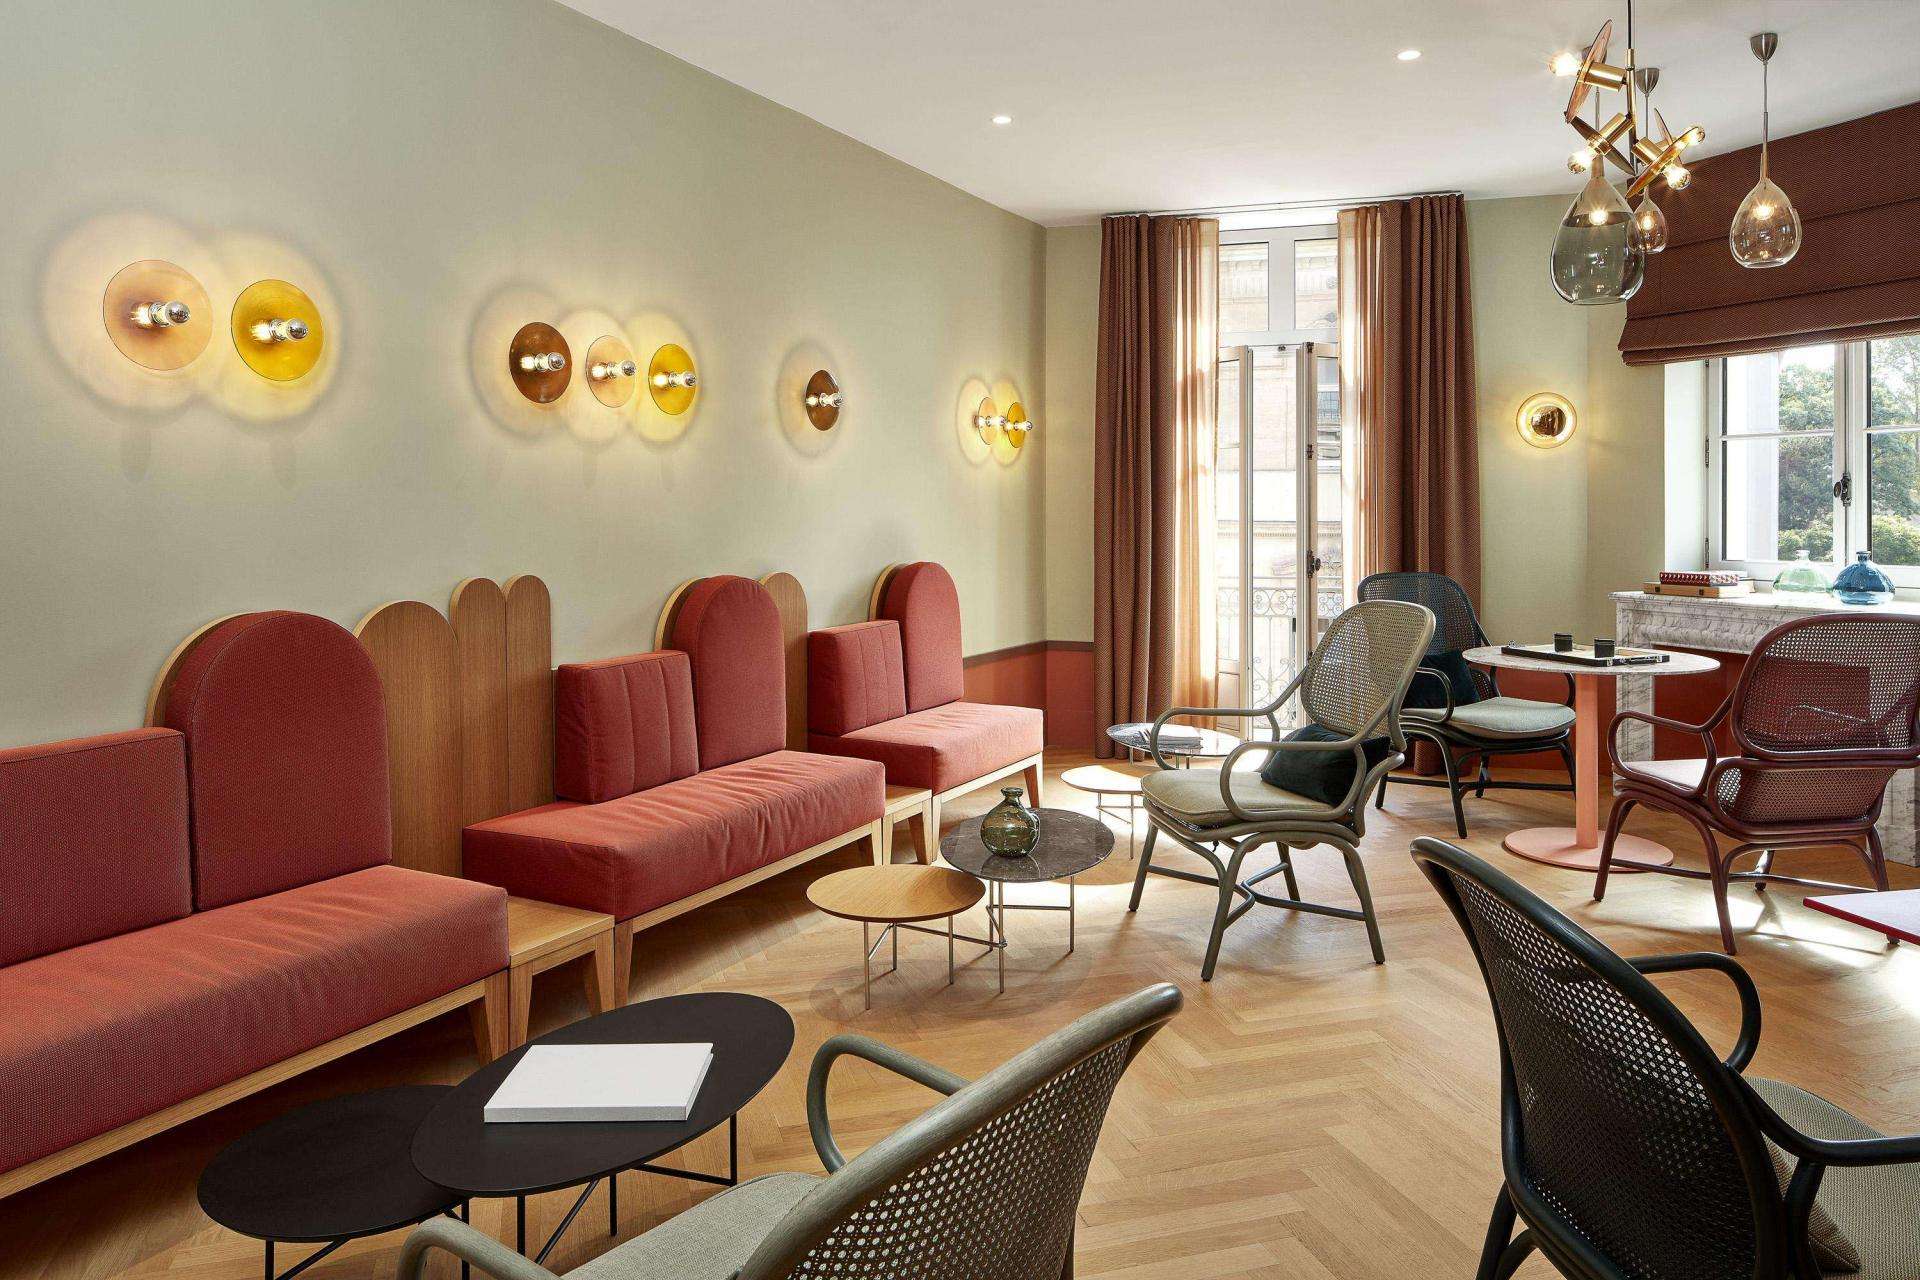 Les Salons de l'Hôtel De Cambis
Venez découvrir les Salons de l’Hôtel De Cambis
au cœur des remparts d’Avignon pour vos prochaines réunions